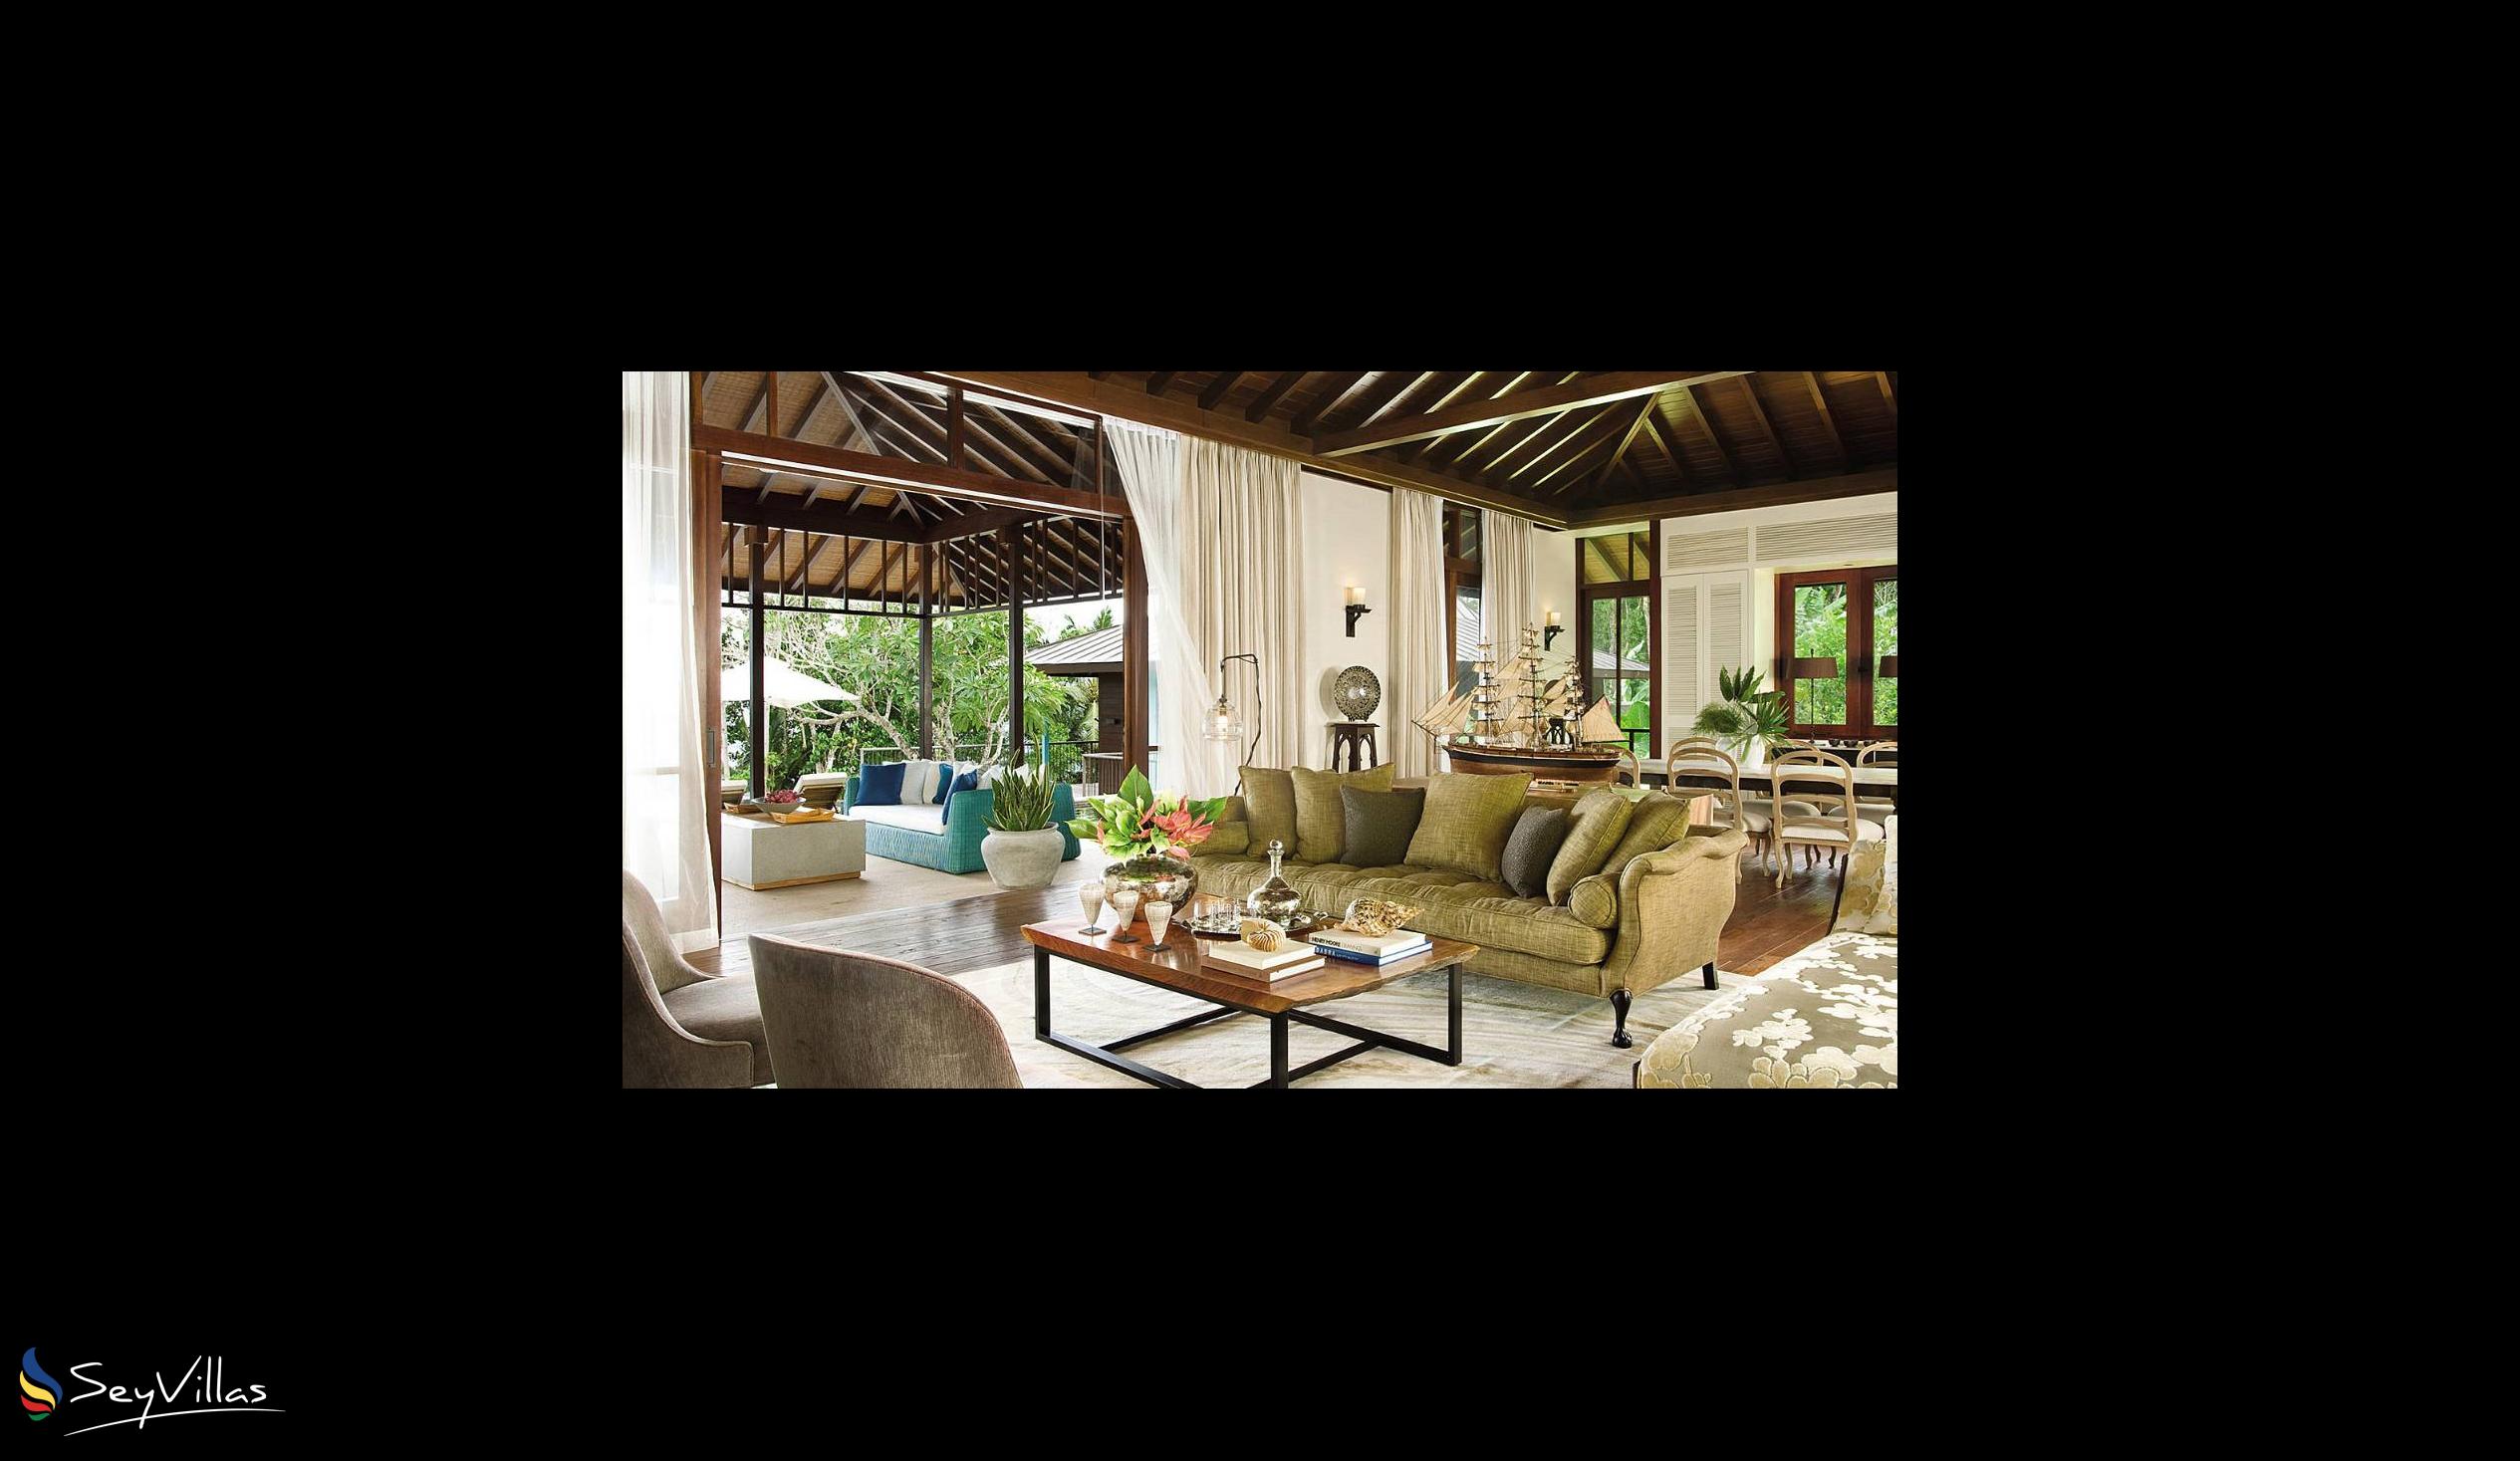 Foto 59: Four Seasons Resort - 3-Bedroom Presidential Suite - Mahé (Seychelles)